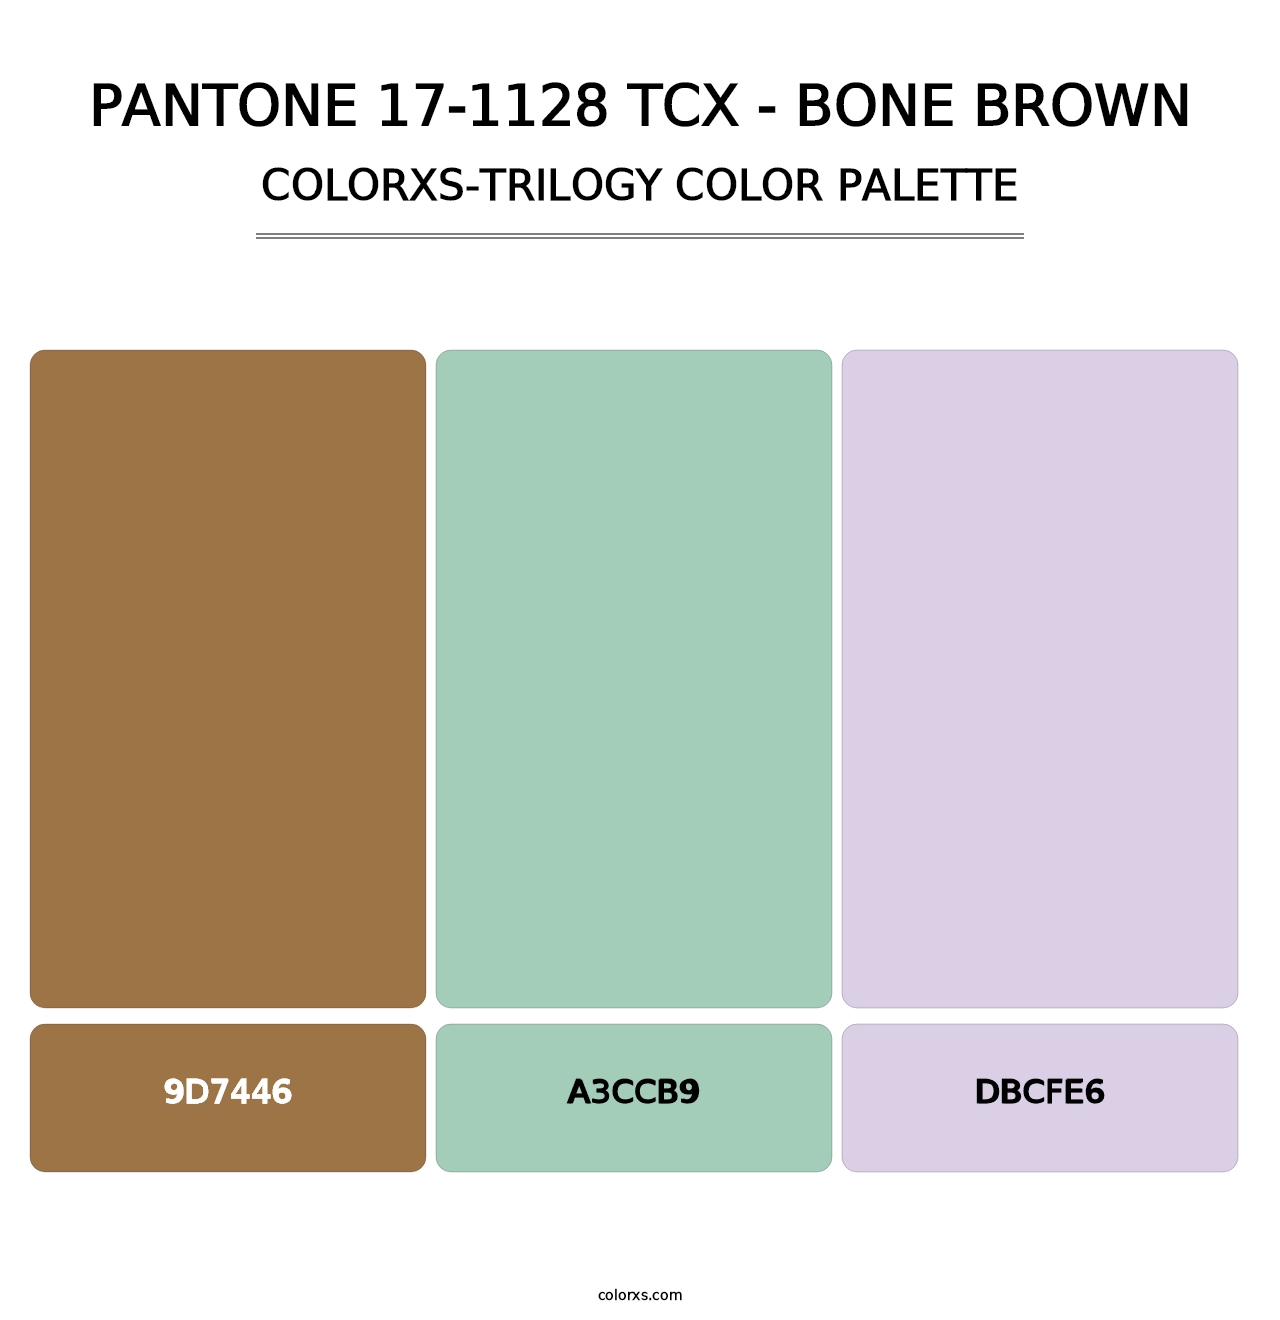 PANTONE 17-1128 TCX - Bone Brown - Colorxs Trilogy Palette